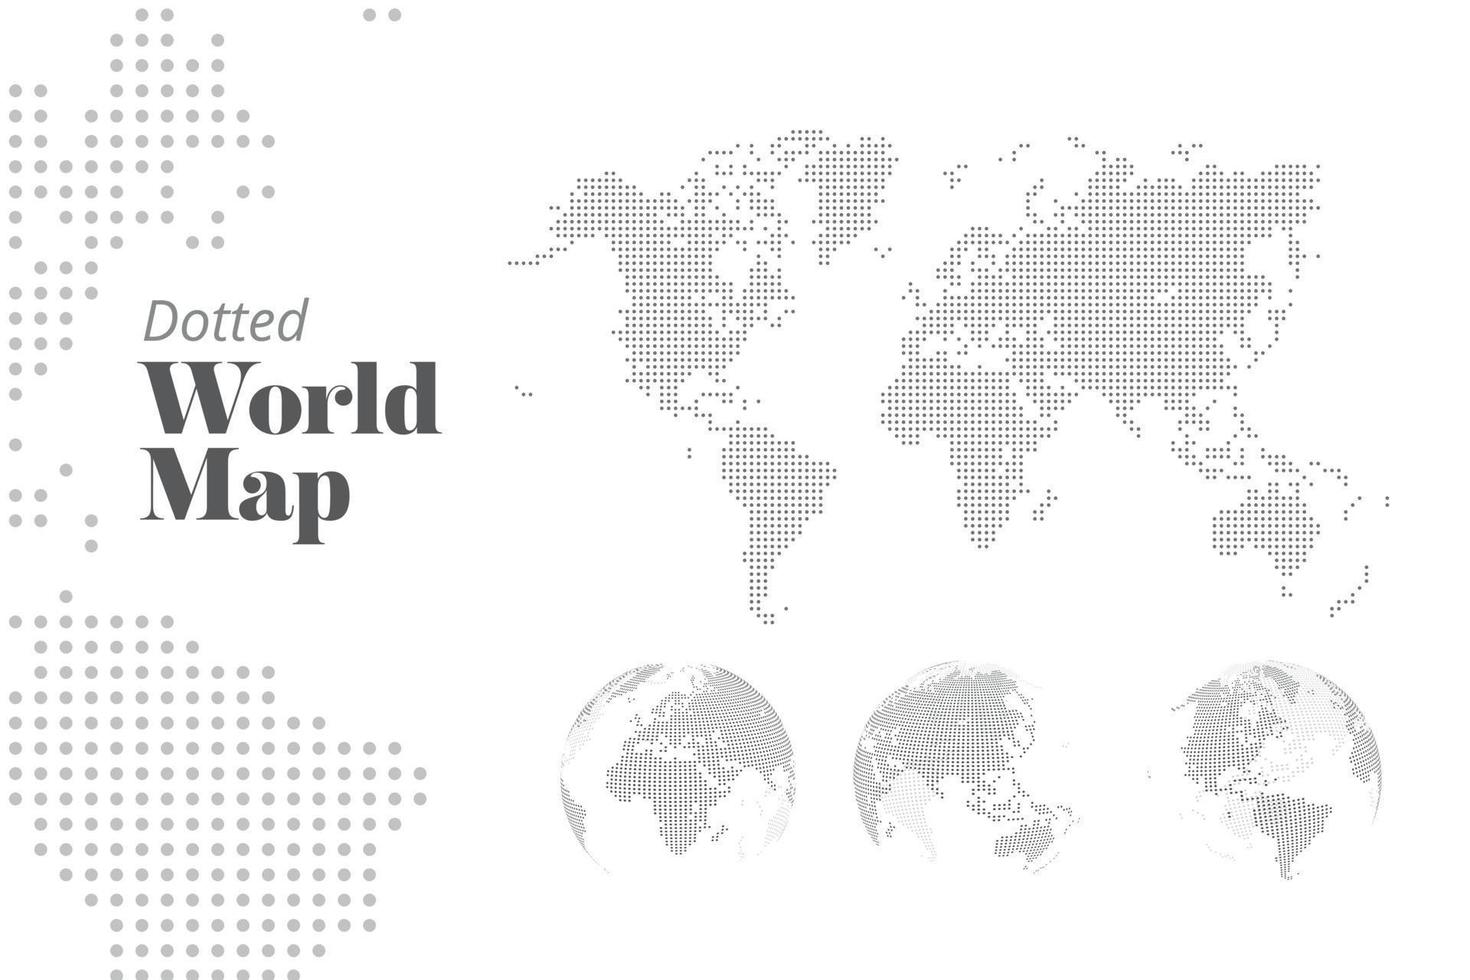 Vektor gepunktete Weltkarte und Erdkugeln, die alle Kontinente zeigen. Illustrationsvorlage für Webdesign, Geschäftspräsentation, Politik und Wirtschaft, Infografiken, Marketing, soziale Medien.